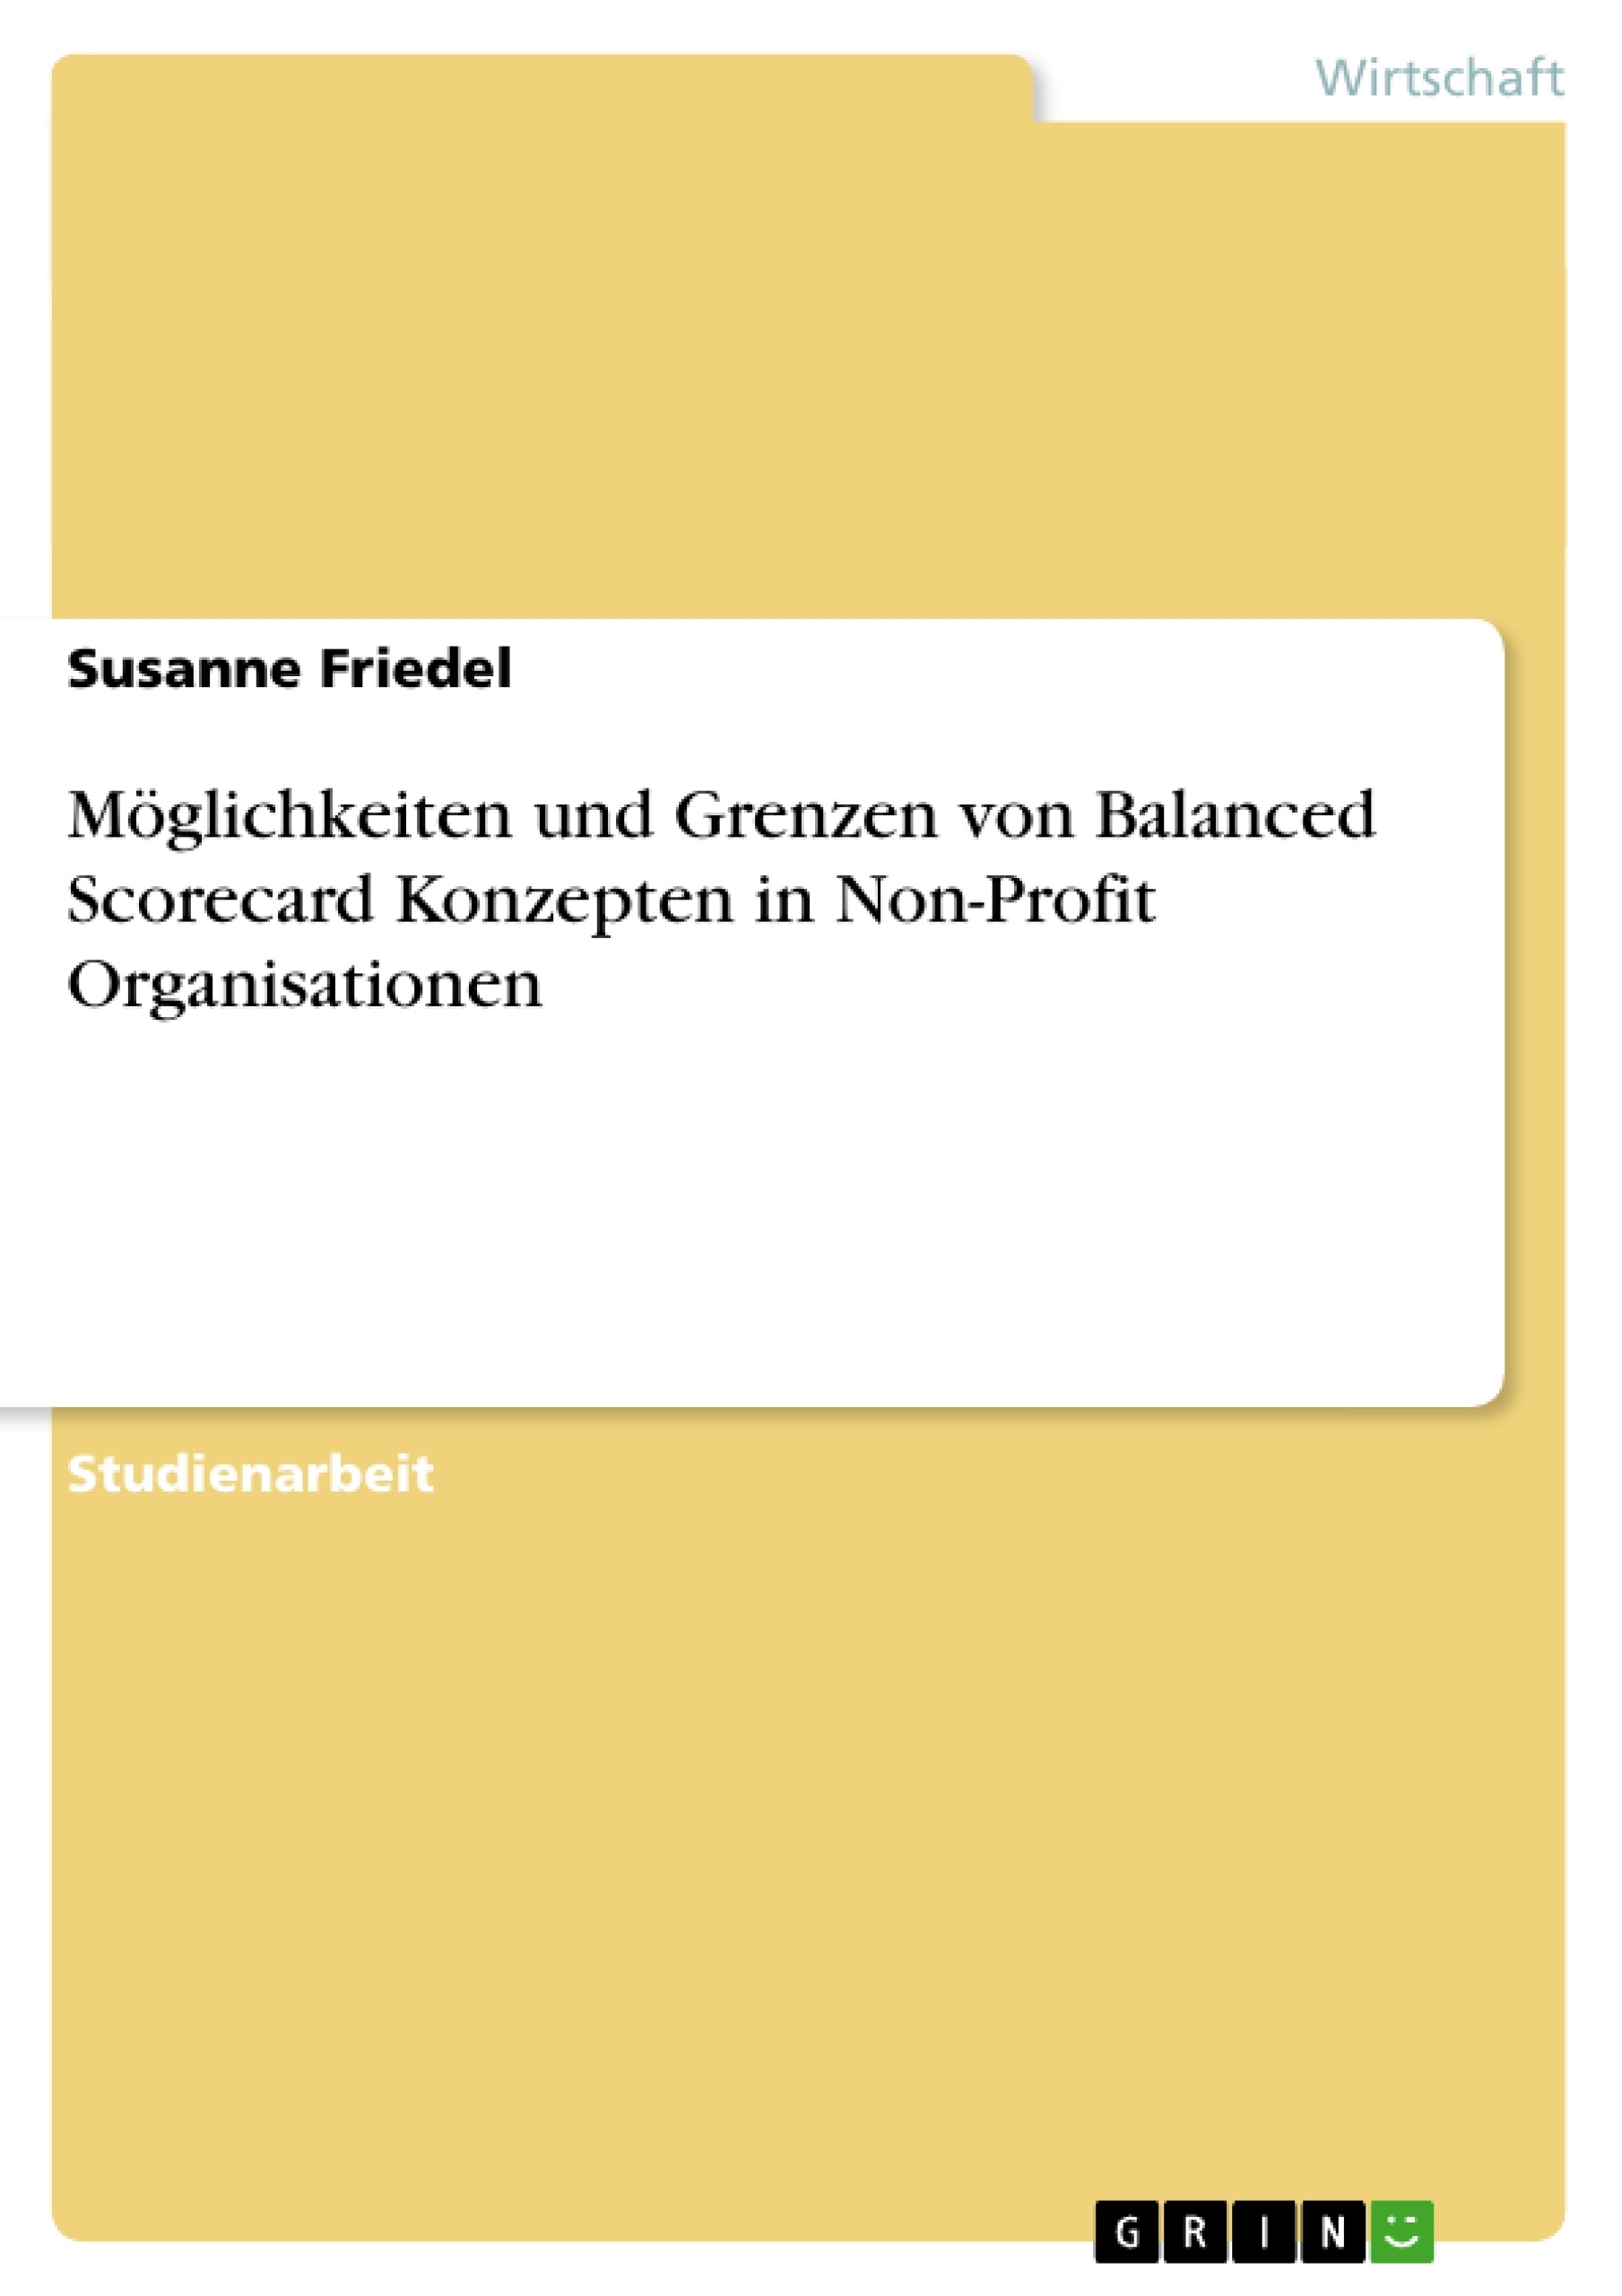 Title: Möglichkeiten und Grenzen von Balanced Scorecard Konzepten in Non-Profit Organisationen